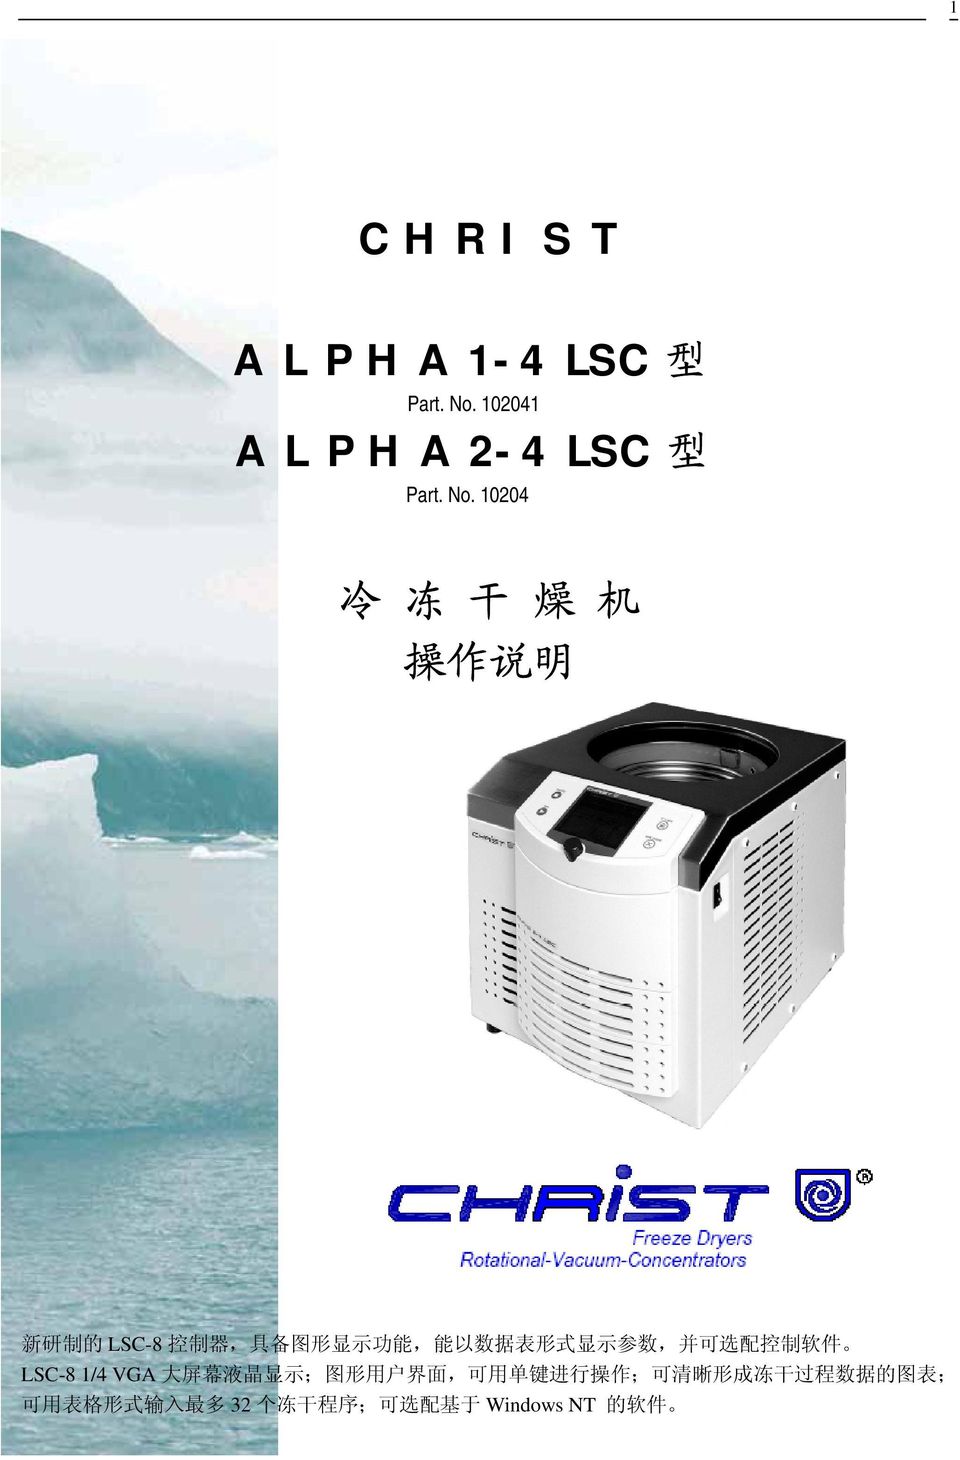 10204 冷 冻 干 燥 机 操 作 说 明 新 研 制 的 LSC-8 控 制 器, 具 备 图 形 显 示 功 能, 能 以 数 据 表 形 式 显 示 参